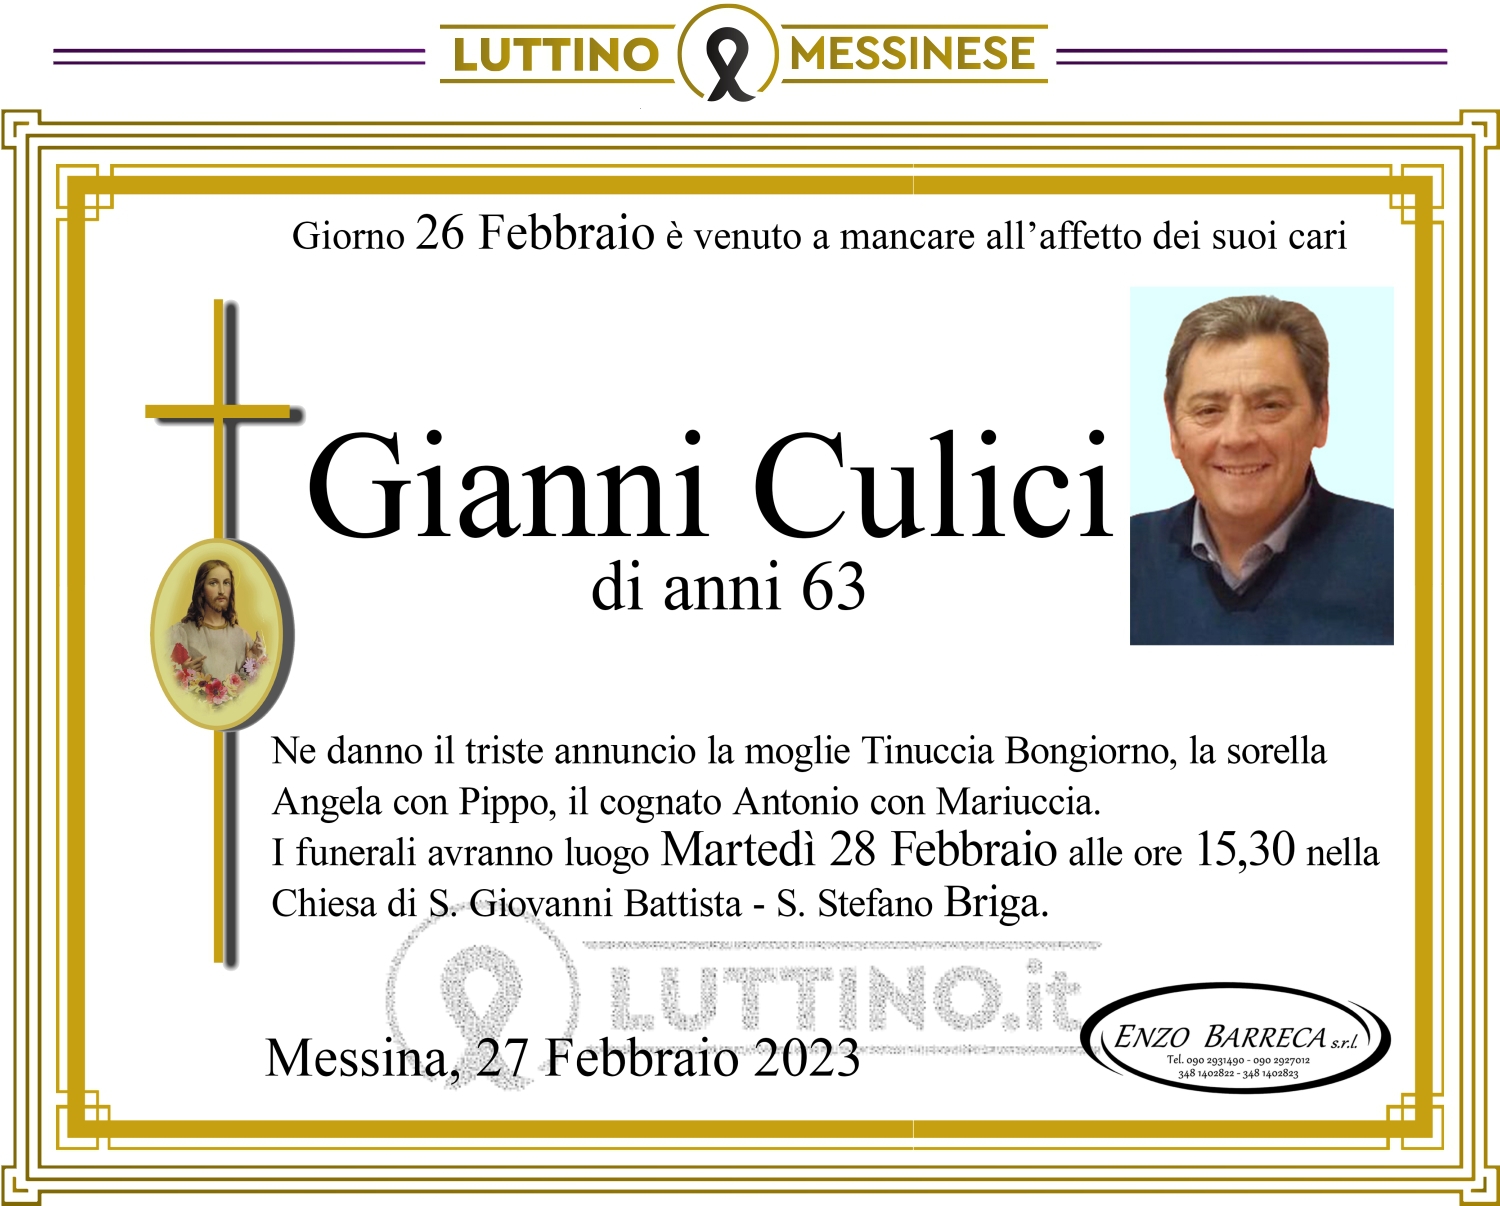 Gianni Culici